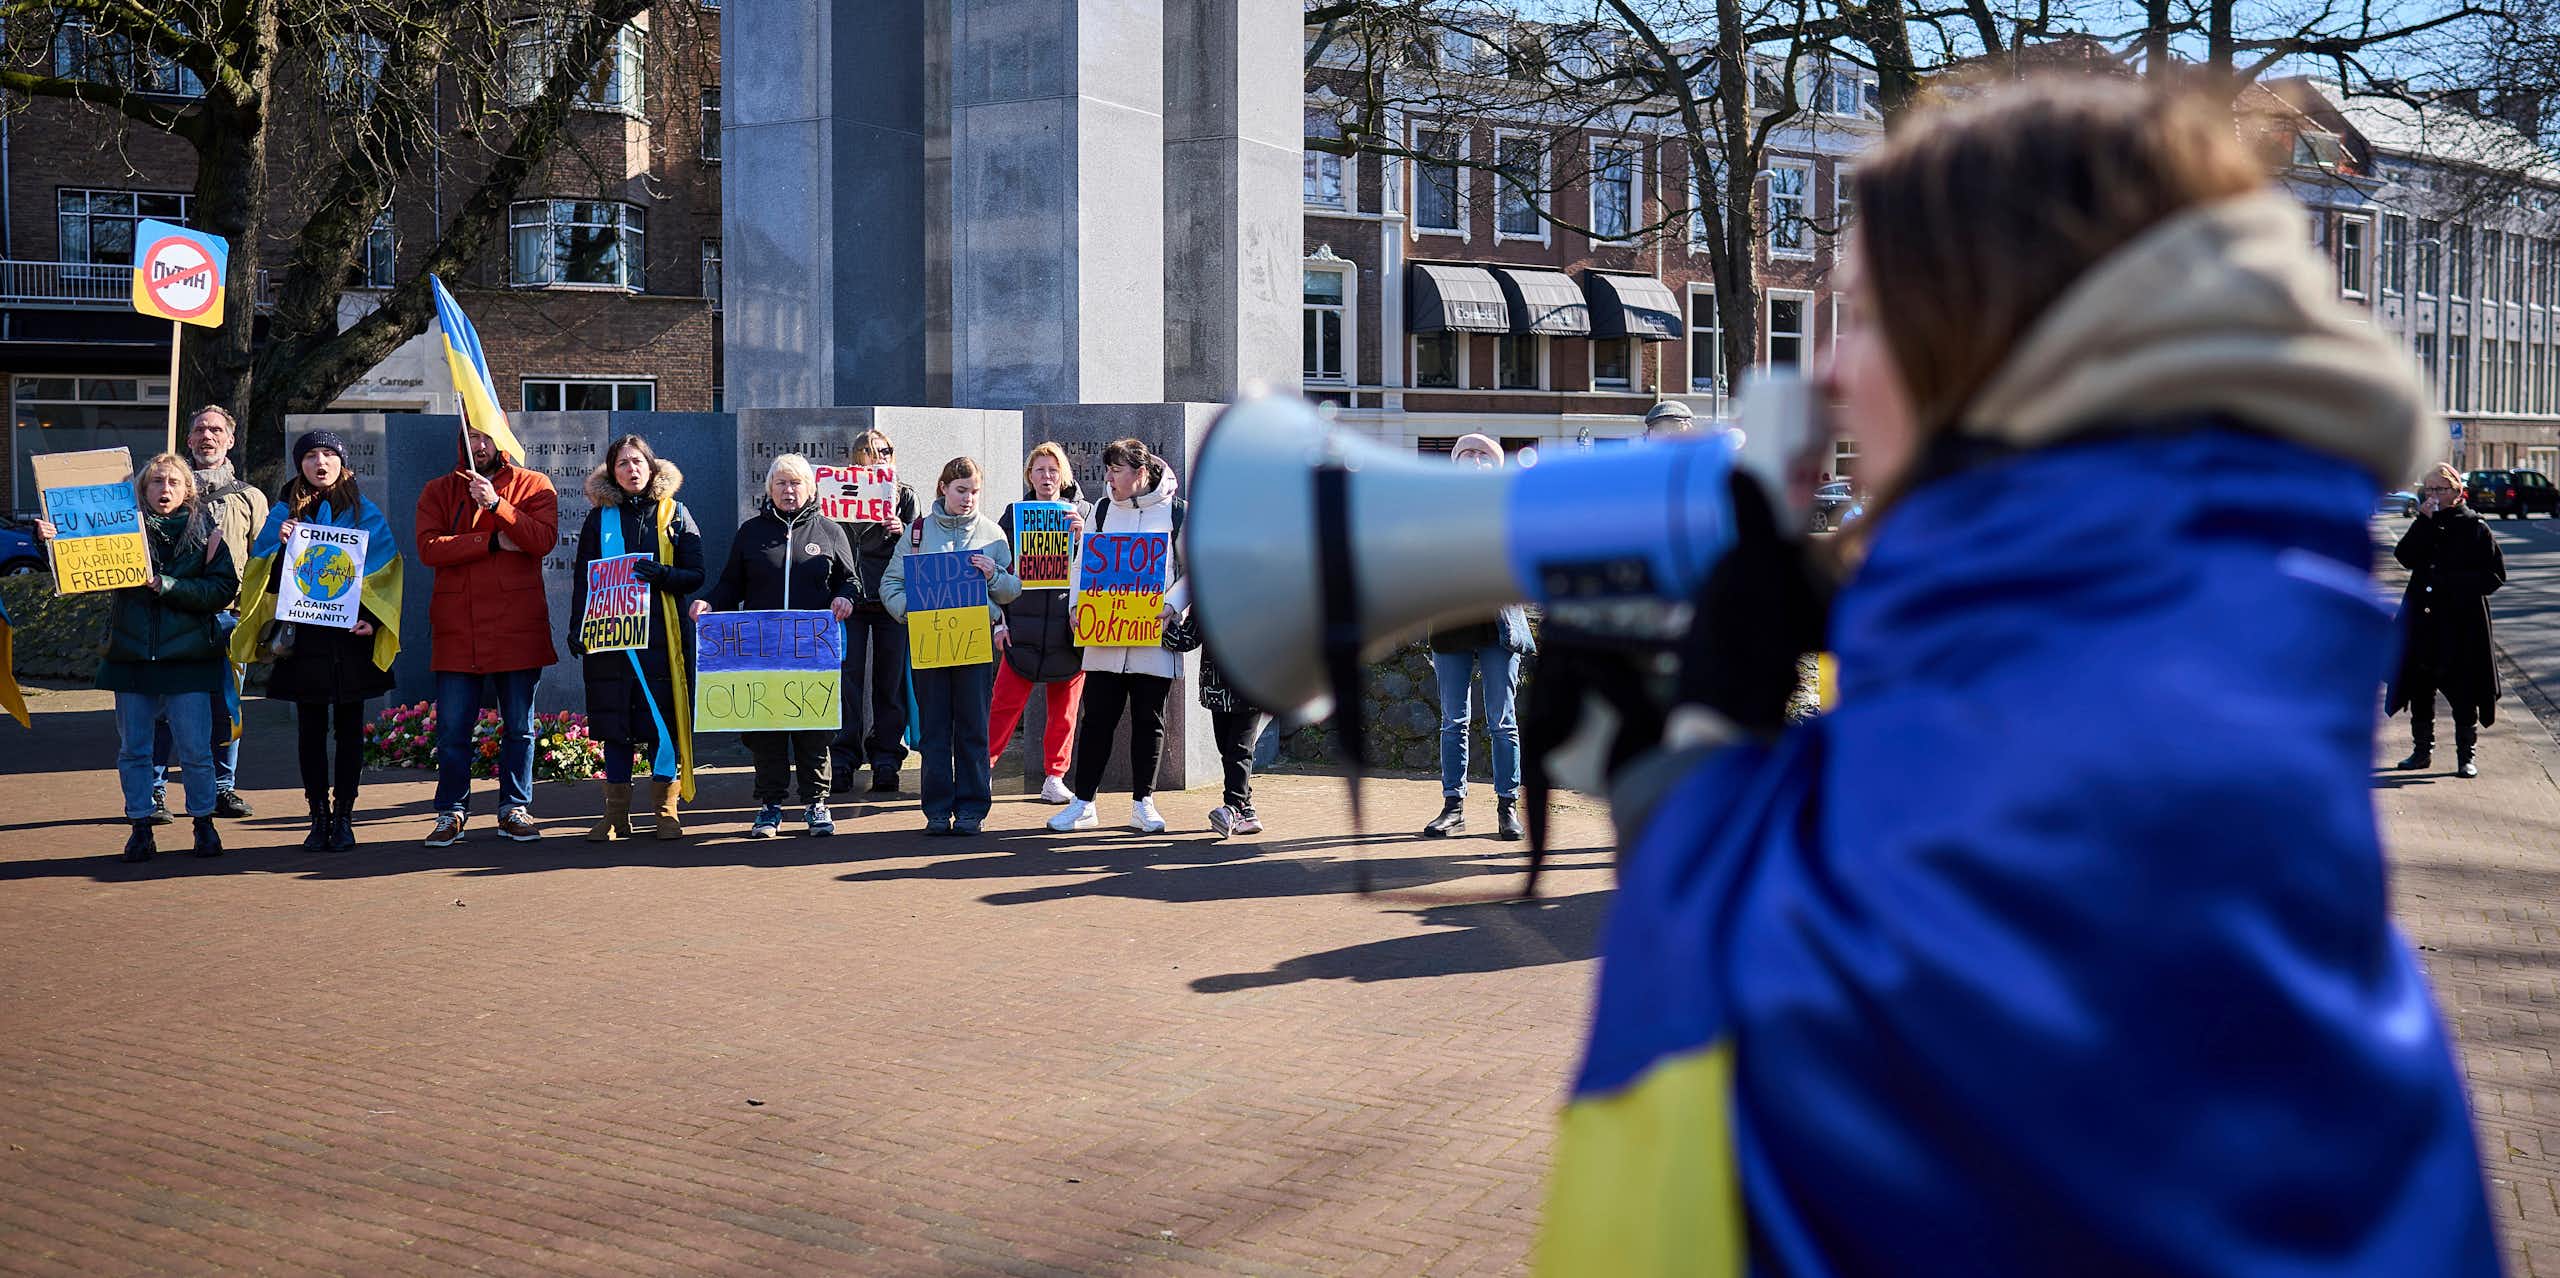 Une femme enveloppée dans un drapeau bleu et jaune crie dans un mégaphone. D'autres personnes tenant des panneaux bleus et jaunes se tiennent devant elle.